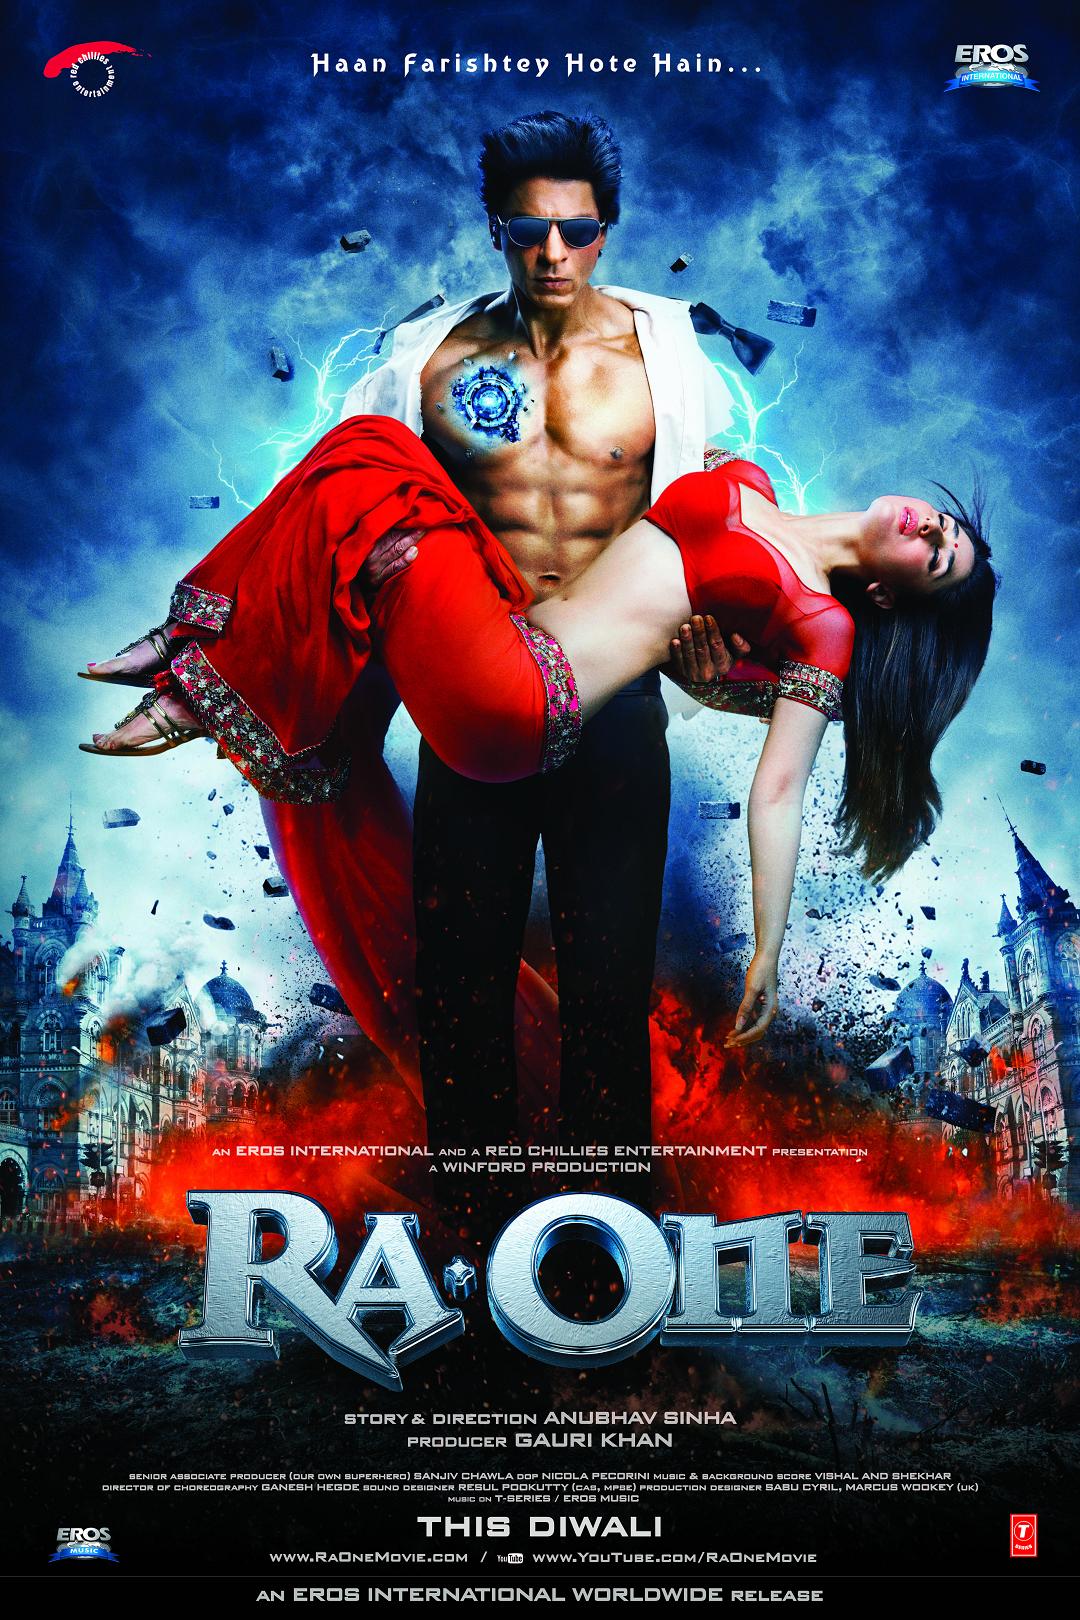 魔王(2011年印度電影)